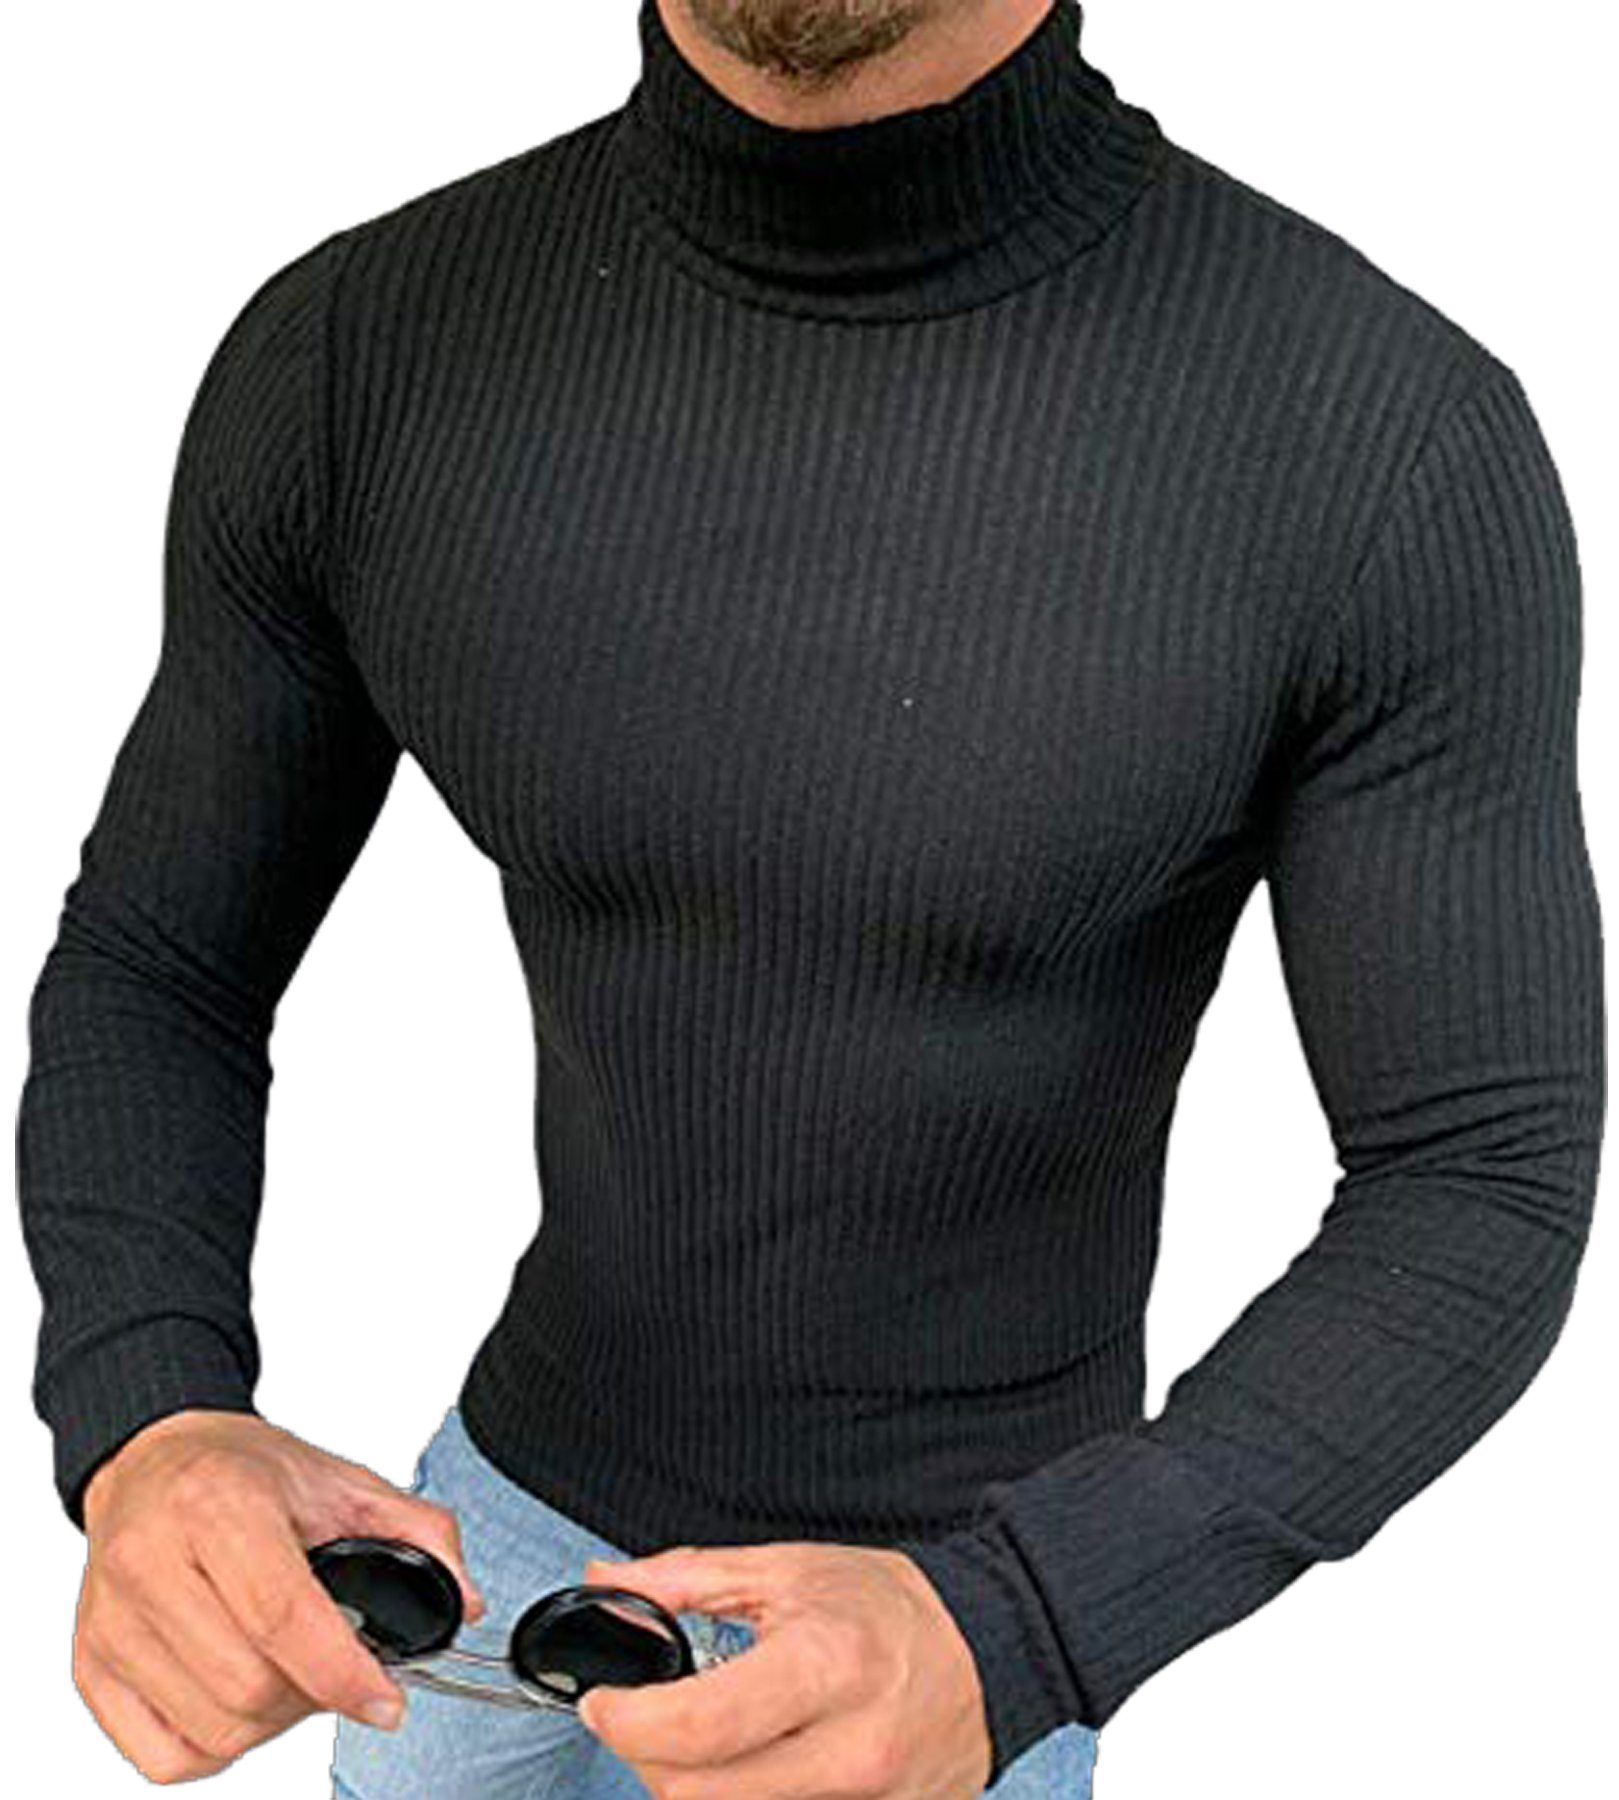 Megaman Jeans Rollkragenpullover »Herren Rollkragenpullover Rolli Hoher  Rollkragen Pulli Shirt in Premium Qualität Sweater Warrm« Hoher Kragen  online kaufen | OTTO